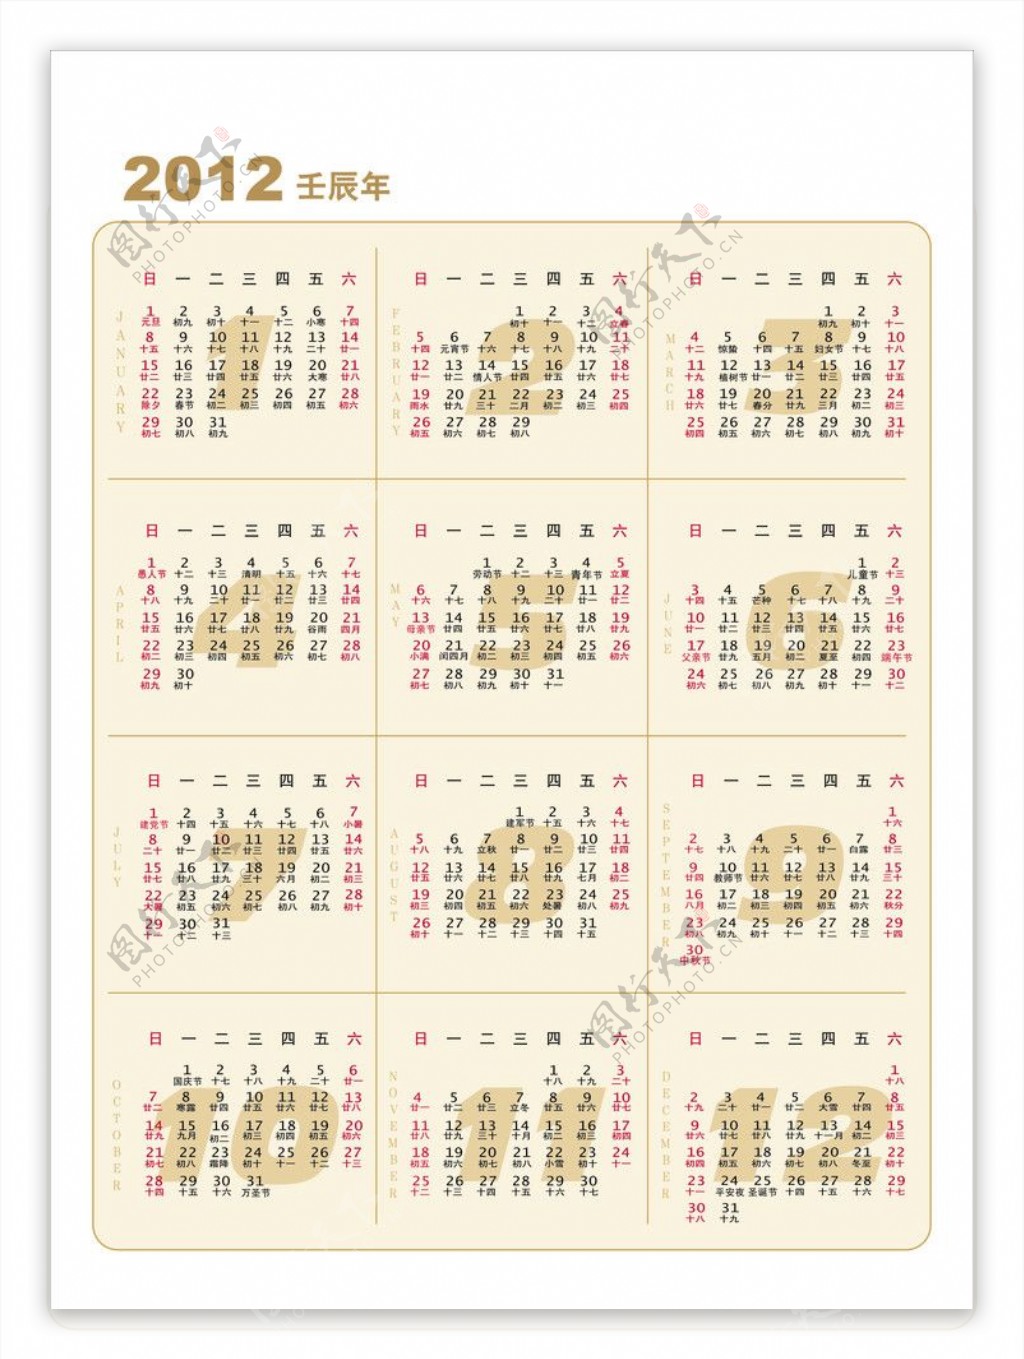 2012日历图片